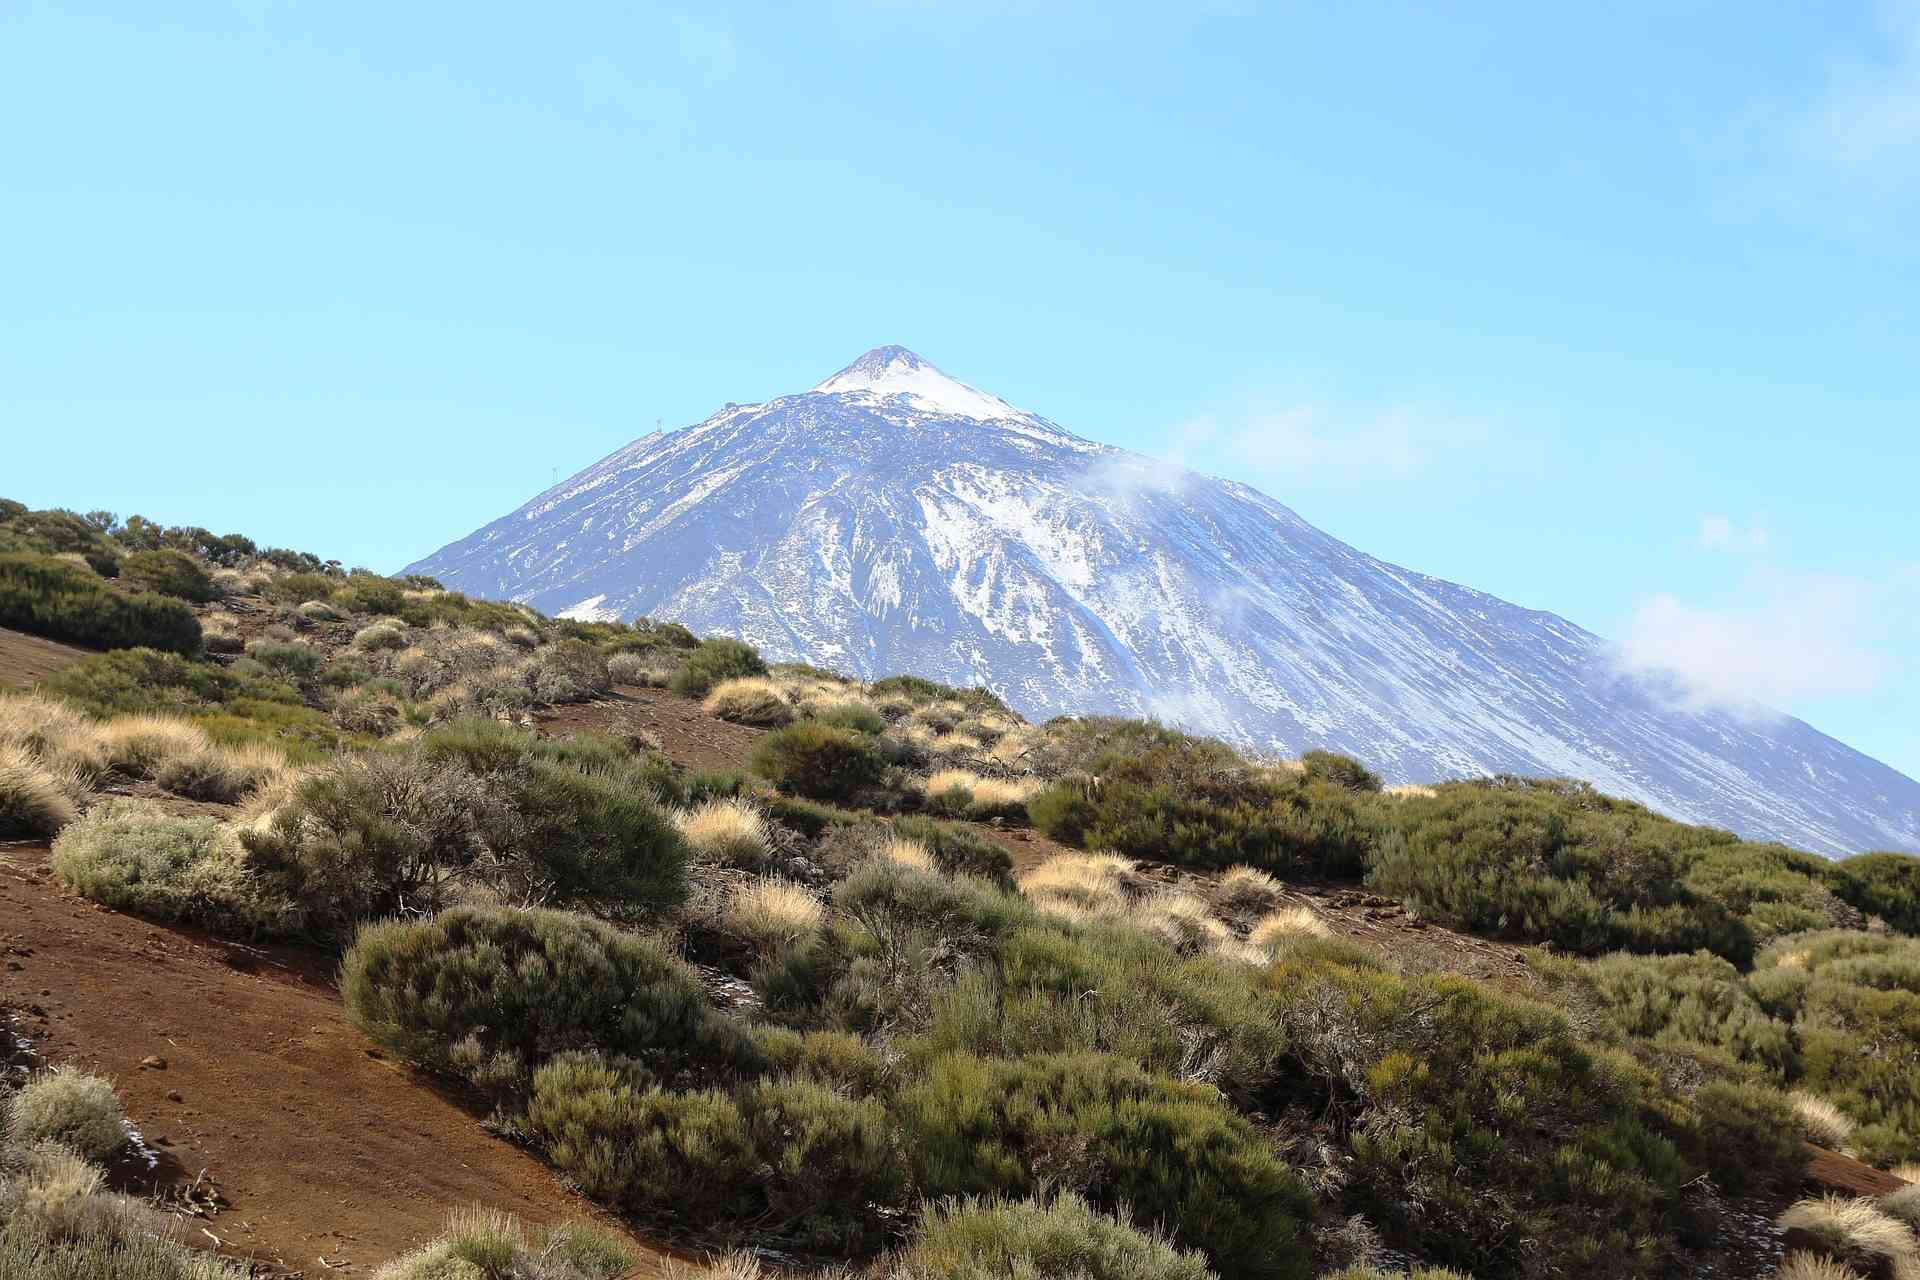 Foto del Teide con la neve. In primo piano si nota la vegetazione arbustiva tipica della zona.